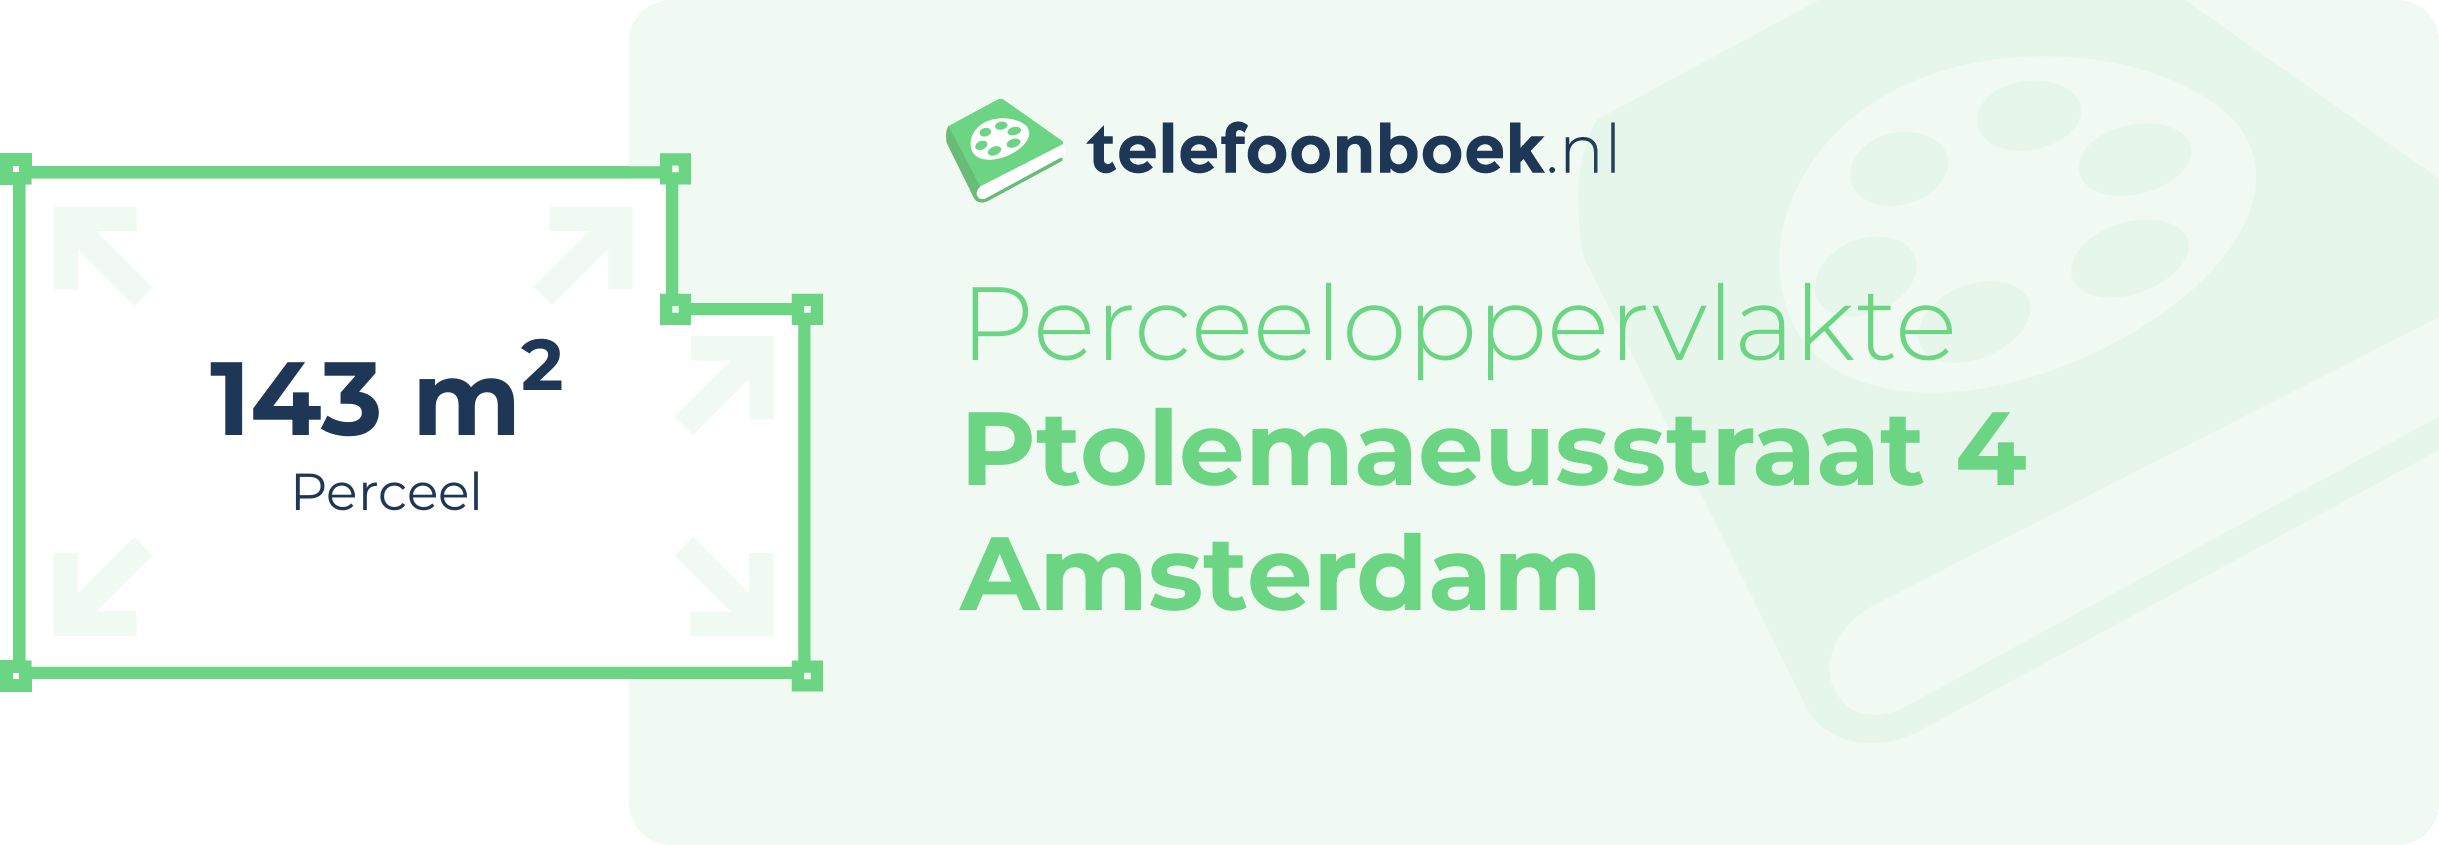 Perceeloppervlakte Ptolemaeusstraat 4 Amsterdam